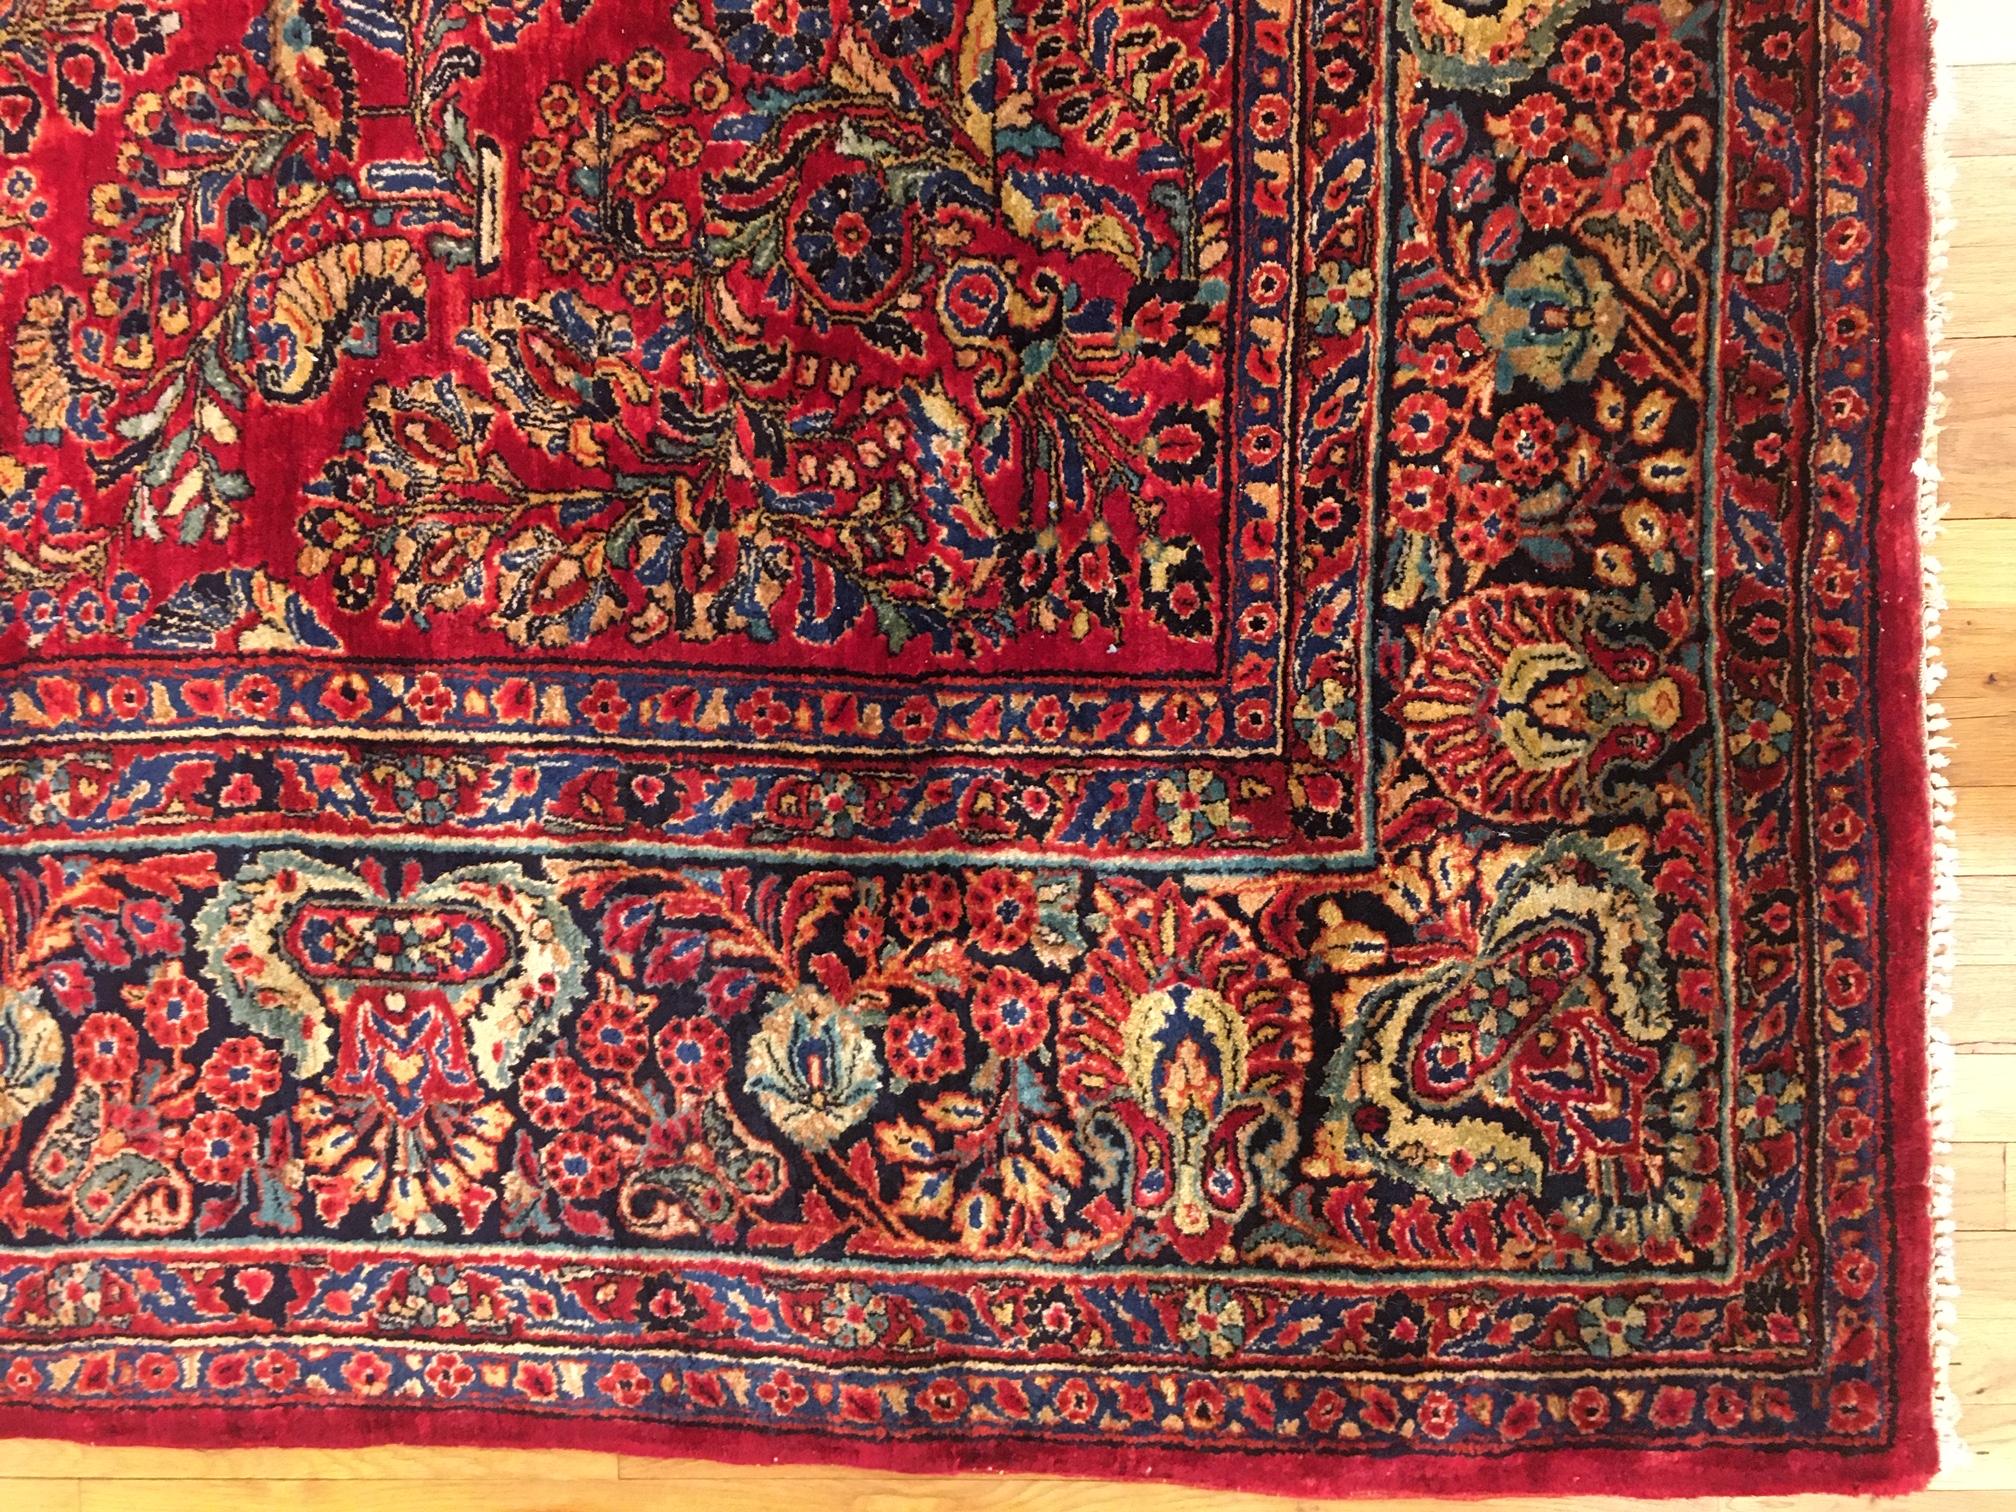 Antique Persian Sarouk Oriental Rug, circa 1910, in room size

An antique Persian Sarouk oriental rug, size 13'0